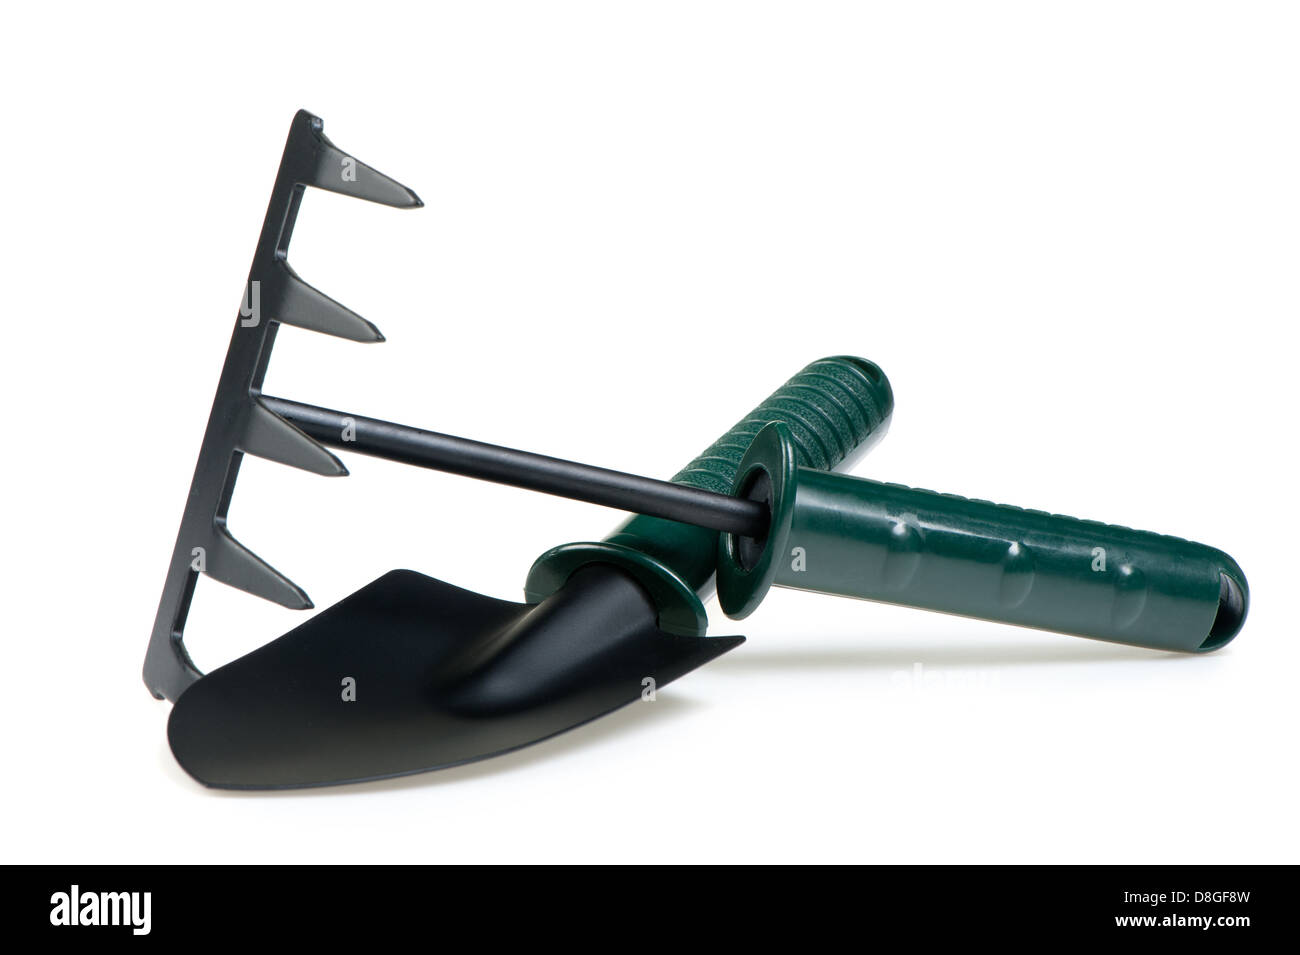 The garden tool a shovel, a rake. Stock Photo